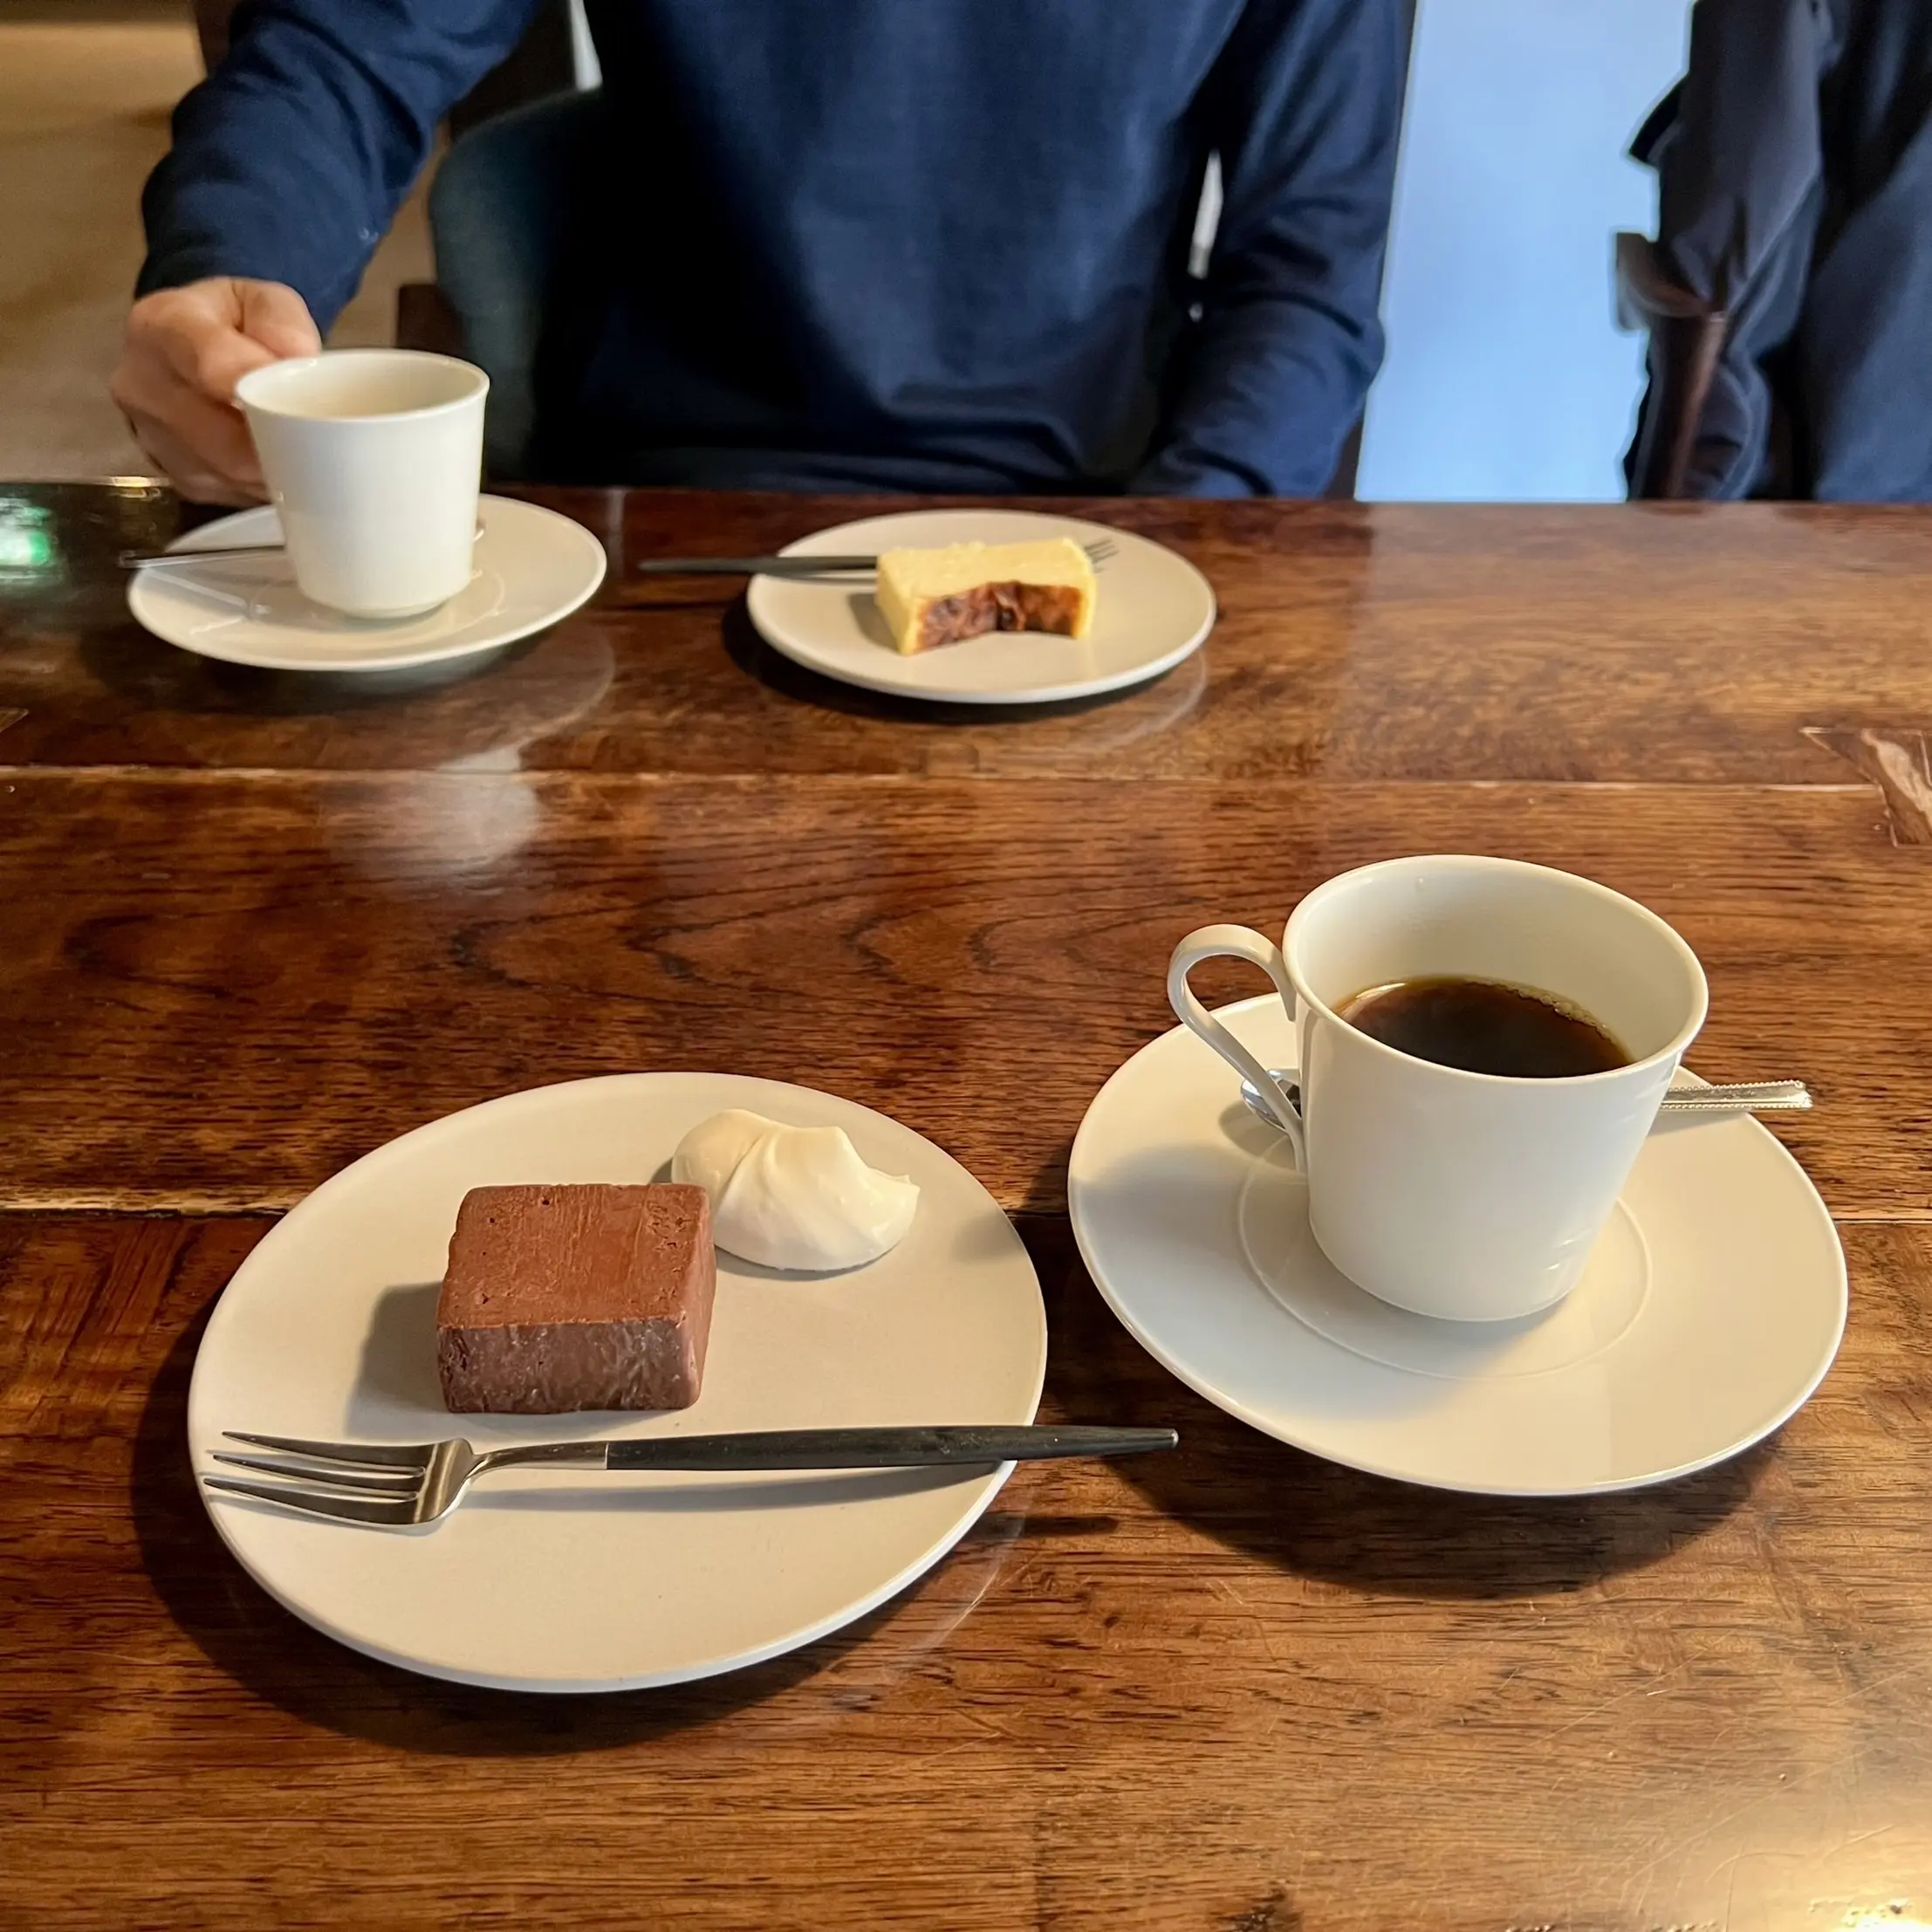 由布院「亀の井別荘」敷地内にあるカフェ「茶房 天井棧敷」ケーキとコーヒー